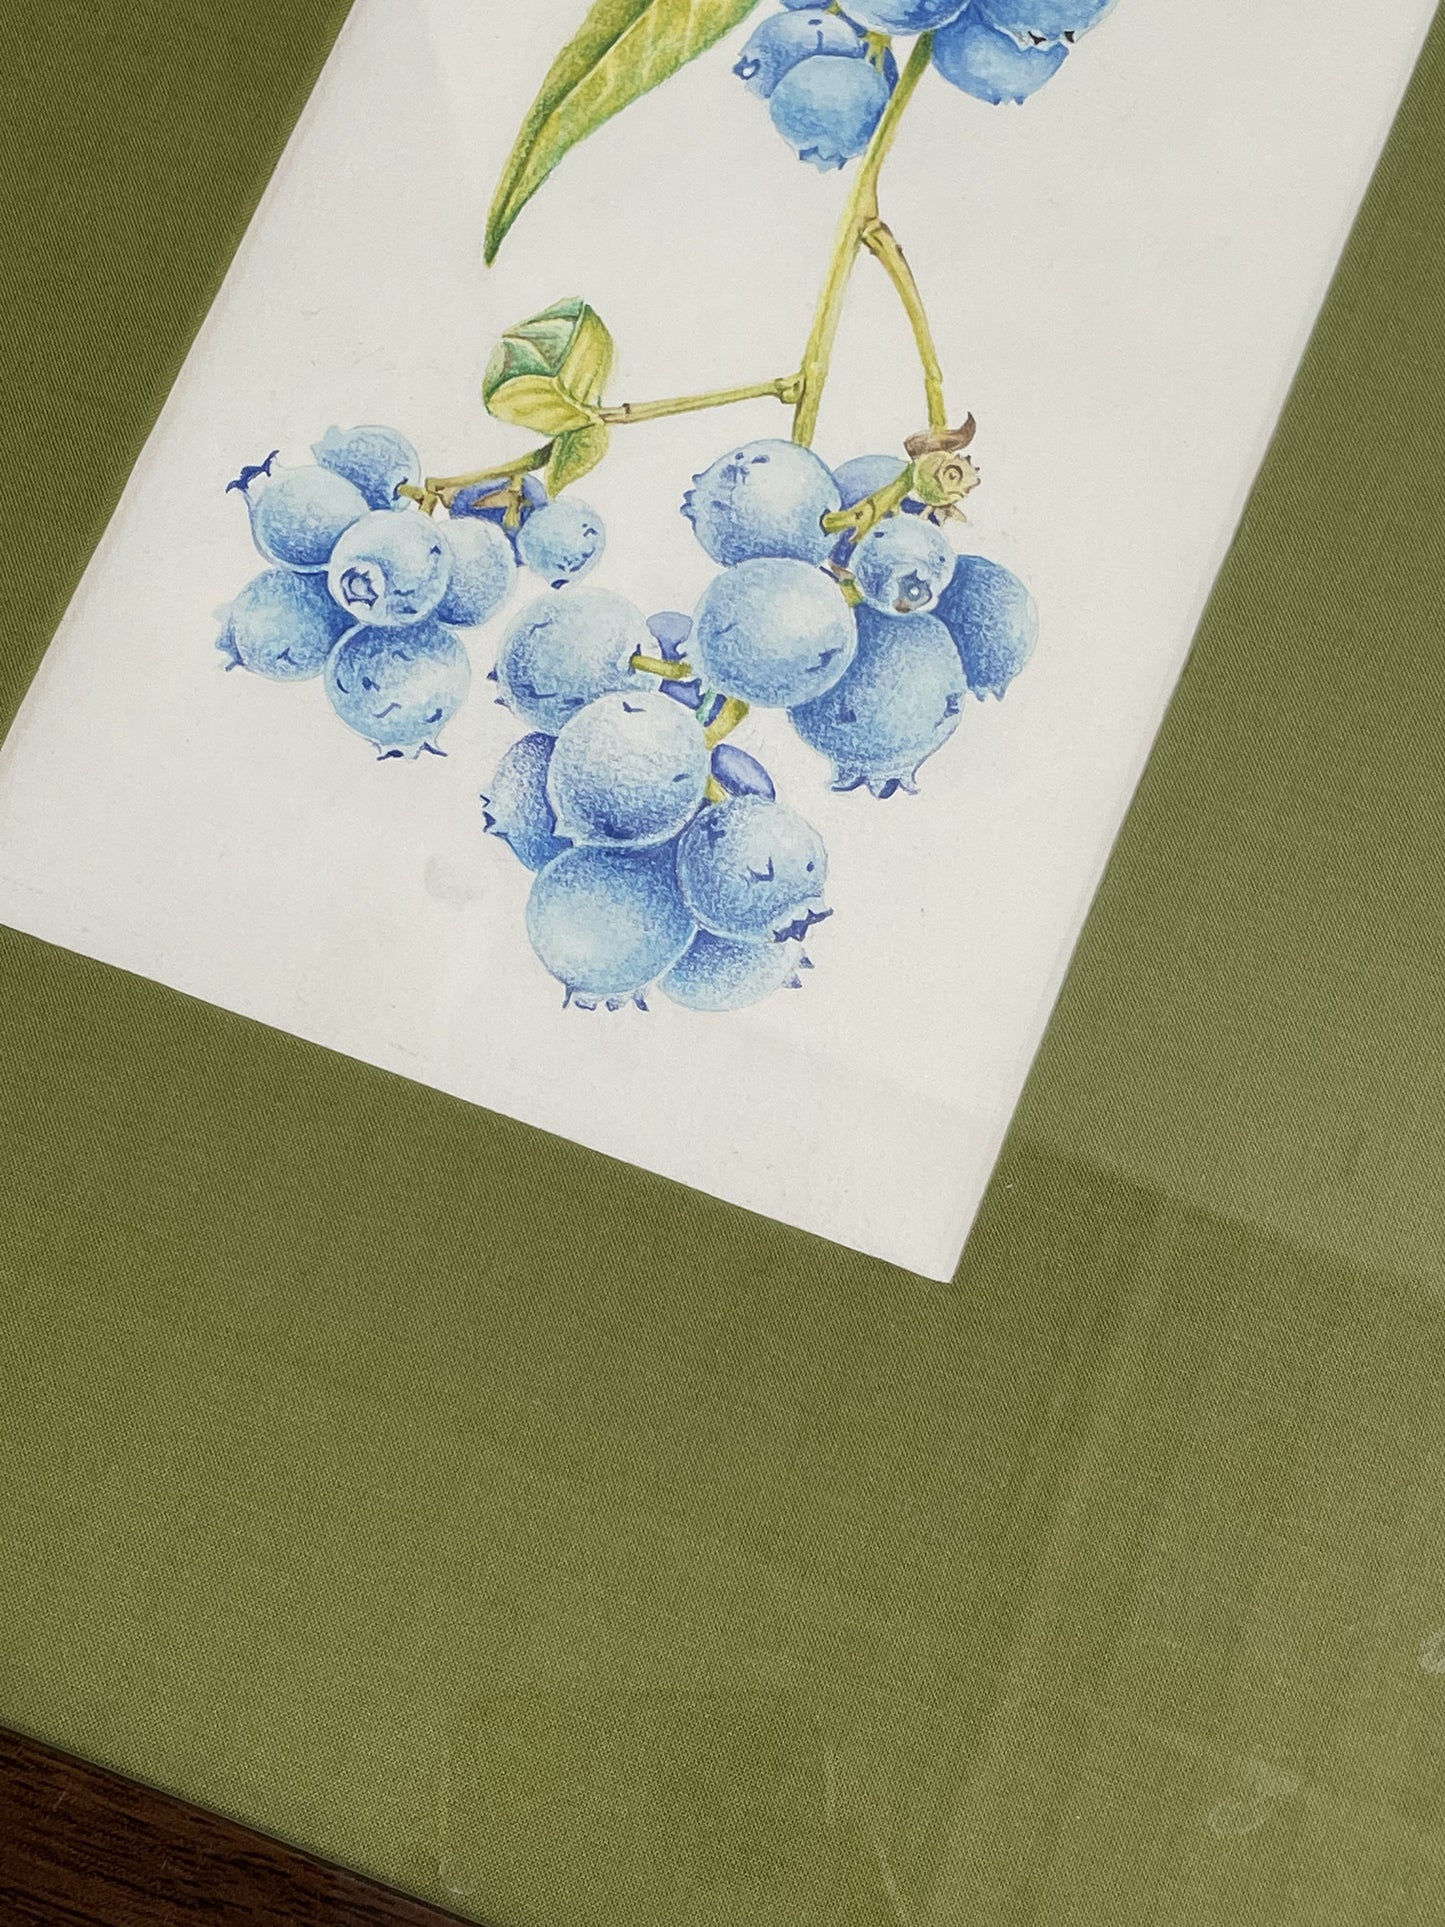 Original Artwork - ಬೆರಿಹಣ್ಣುಗಳು / Blueberries  - Framed Water Colours